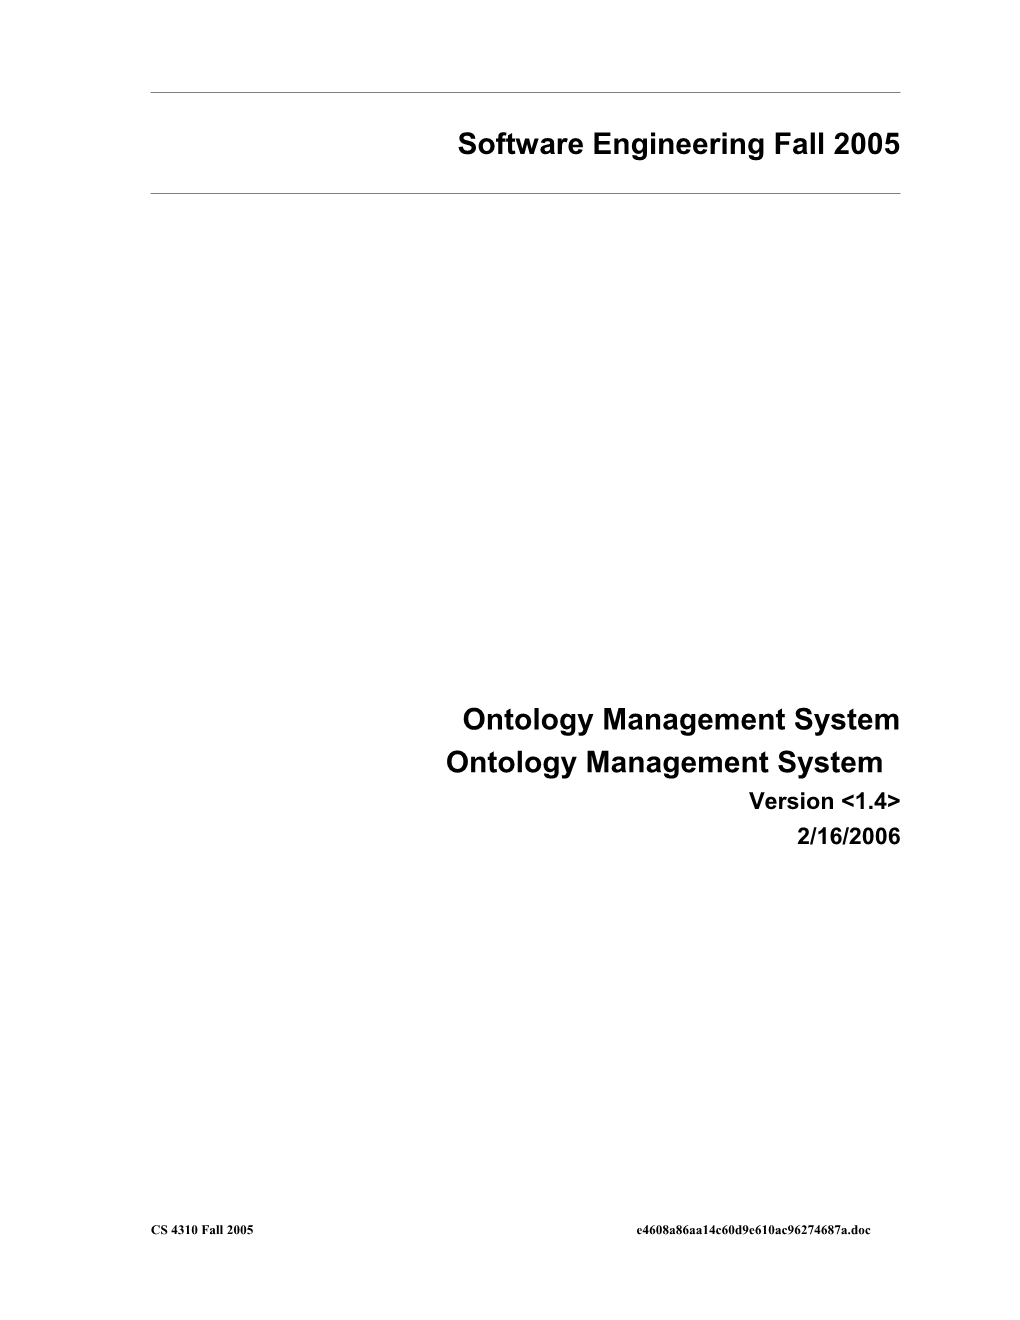 Ontology Management System